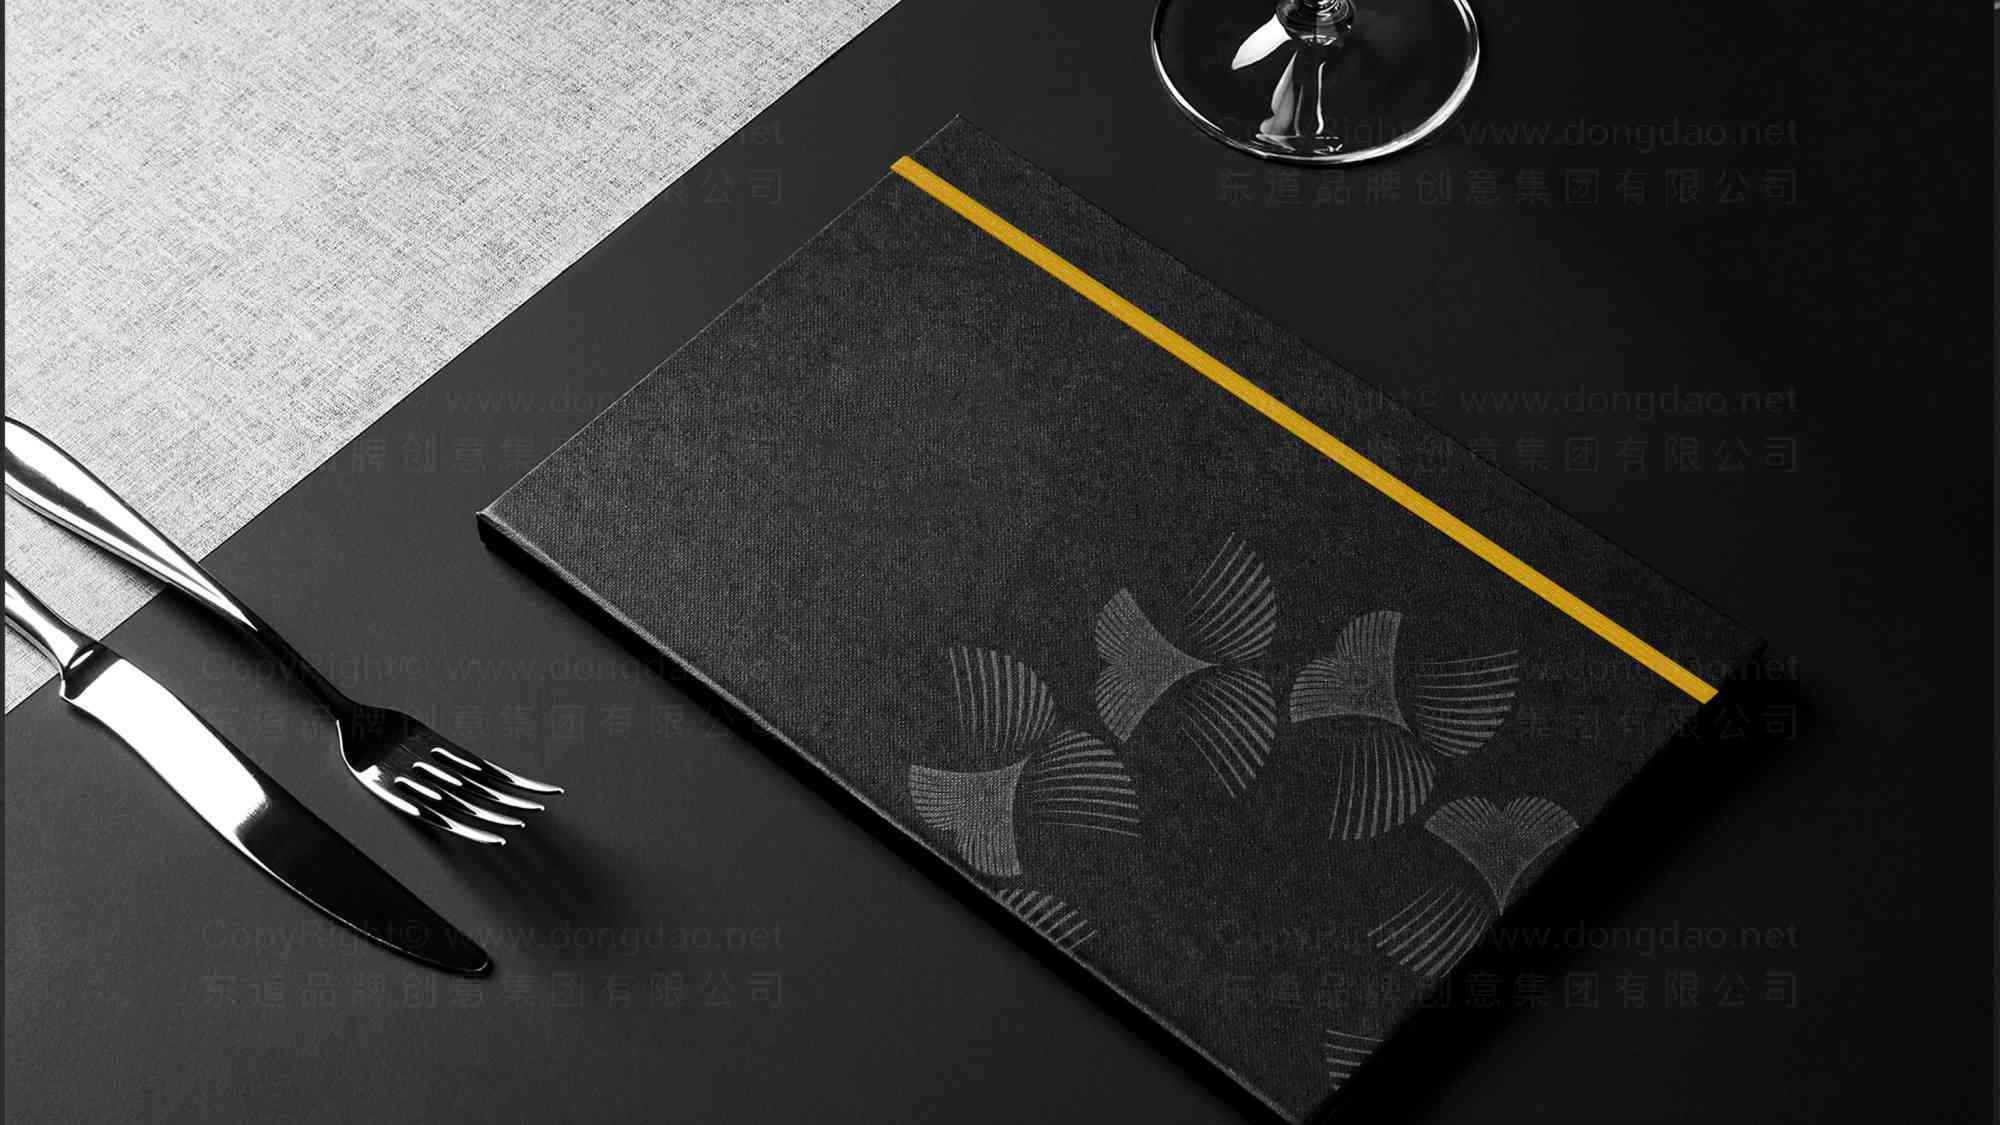 半秋山西餐厅logo设计图片素材